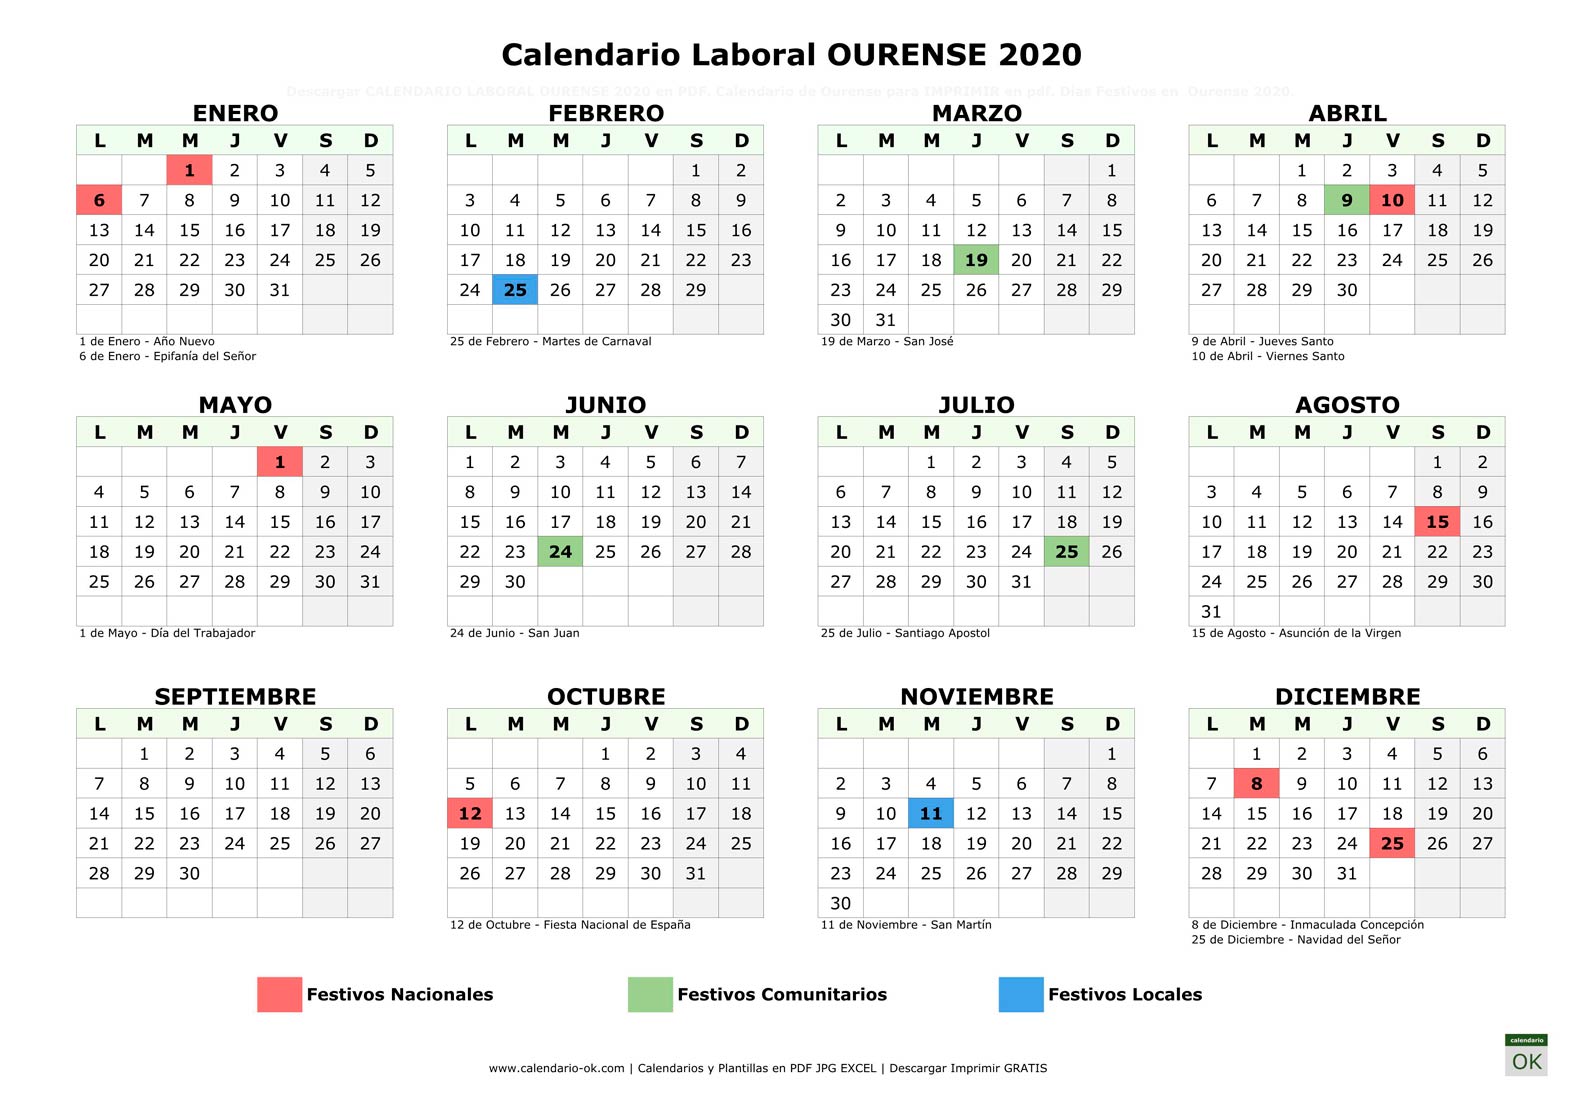 Calendario Laboral OURENSE 2020 horizontal